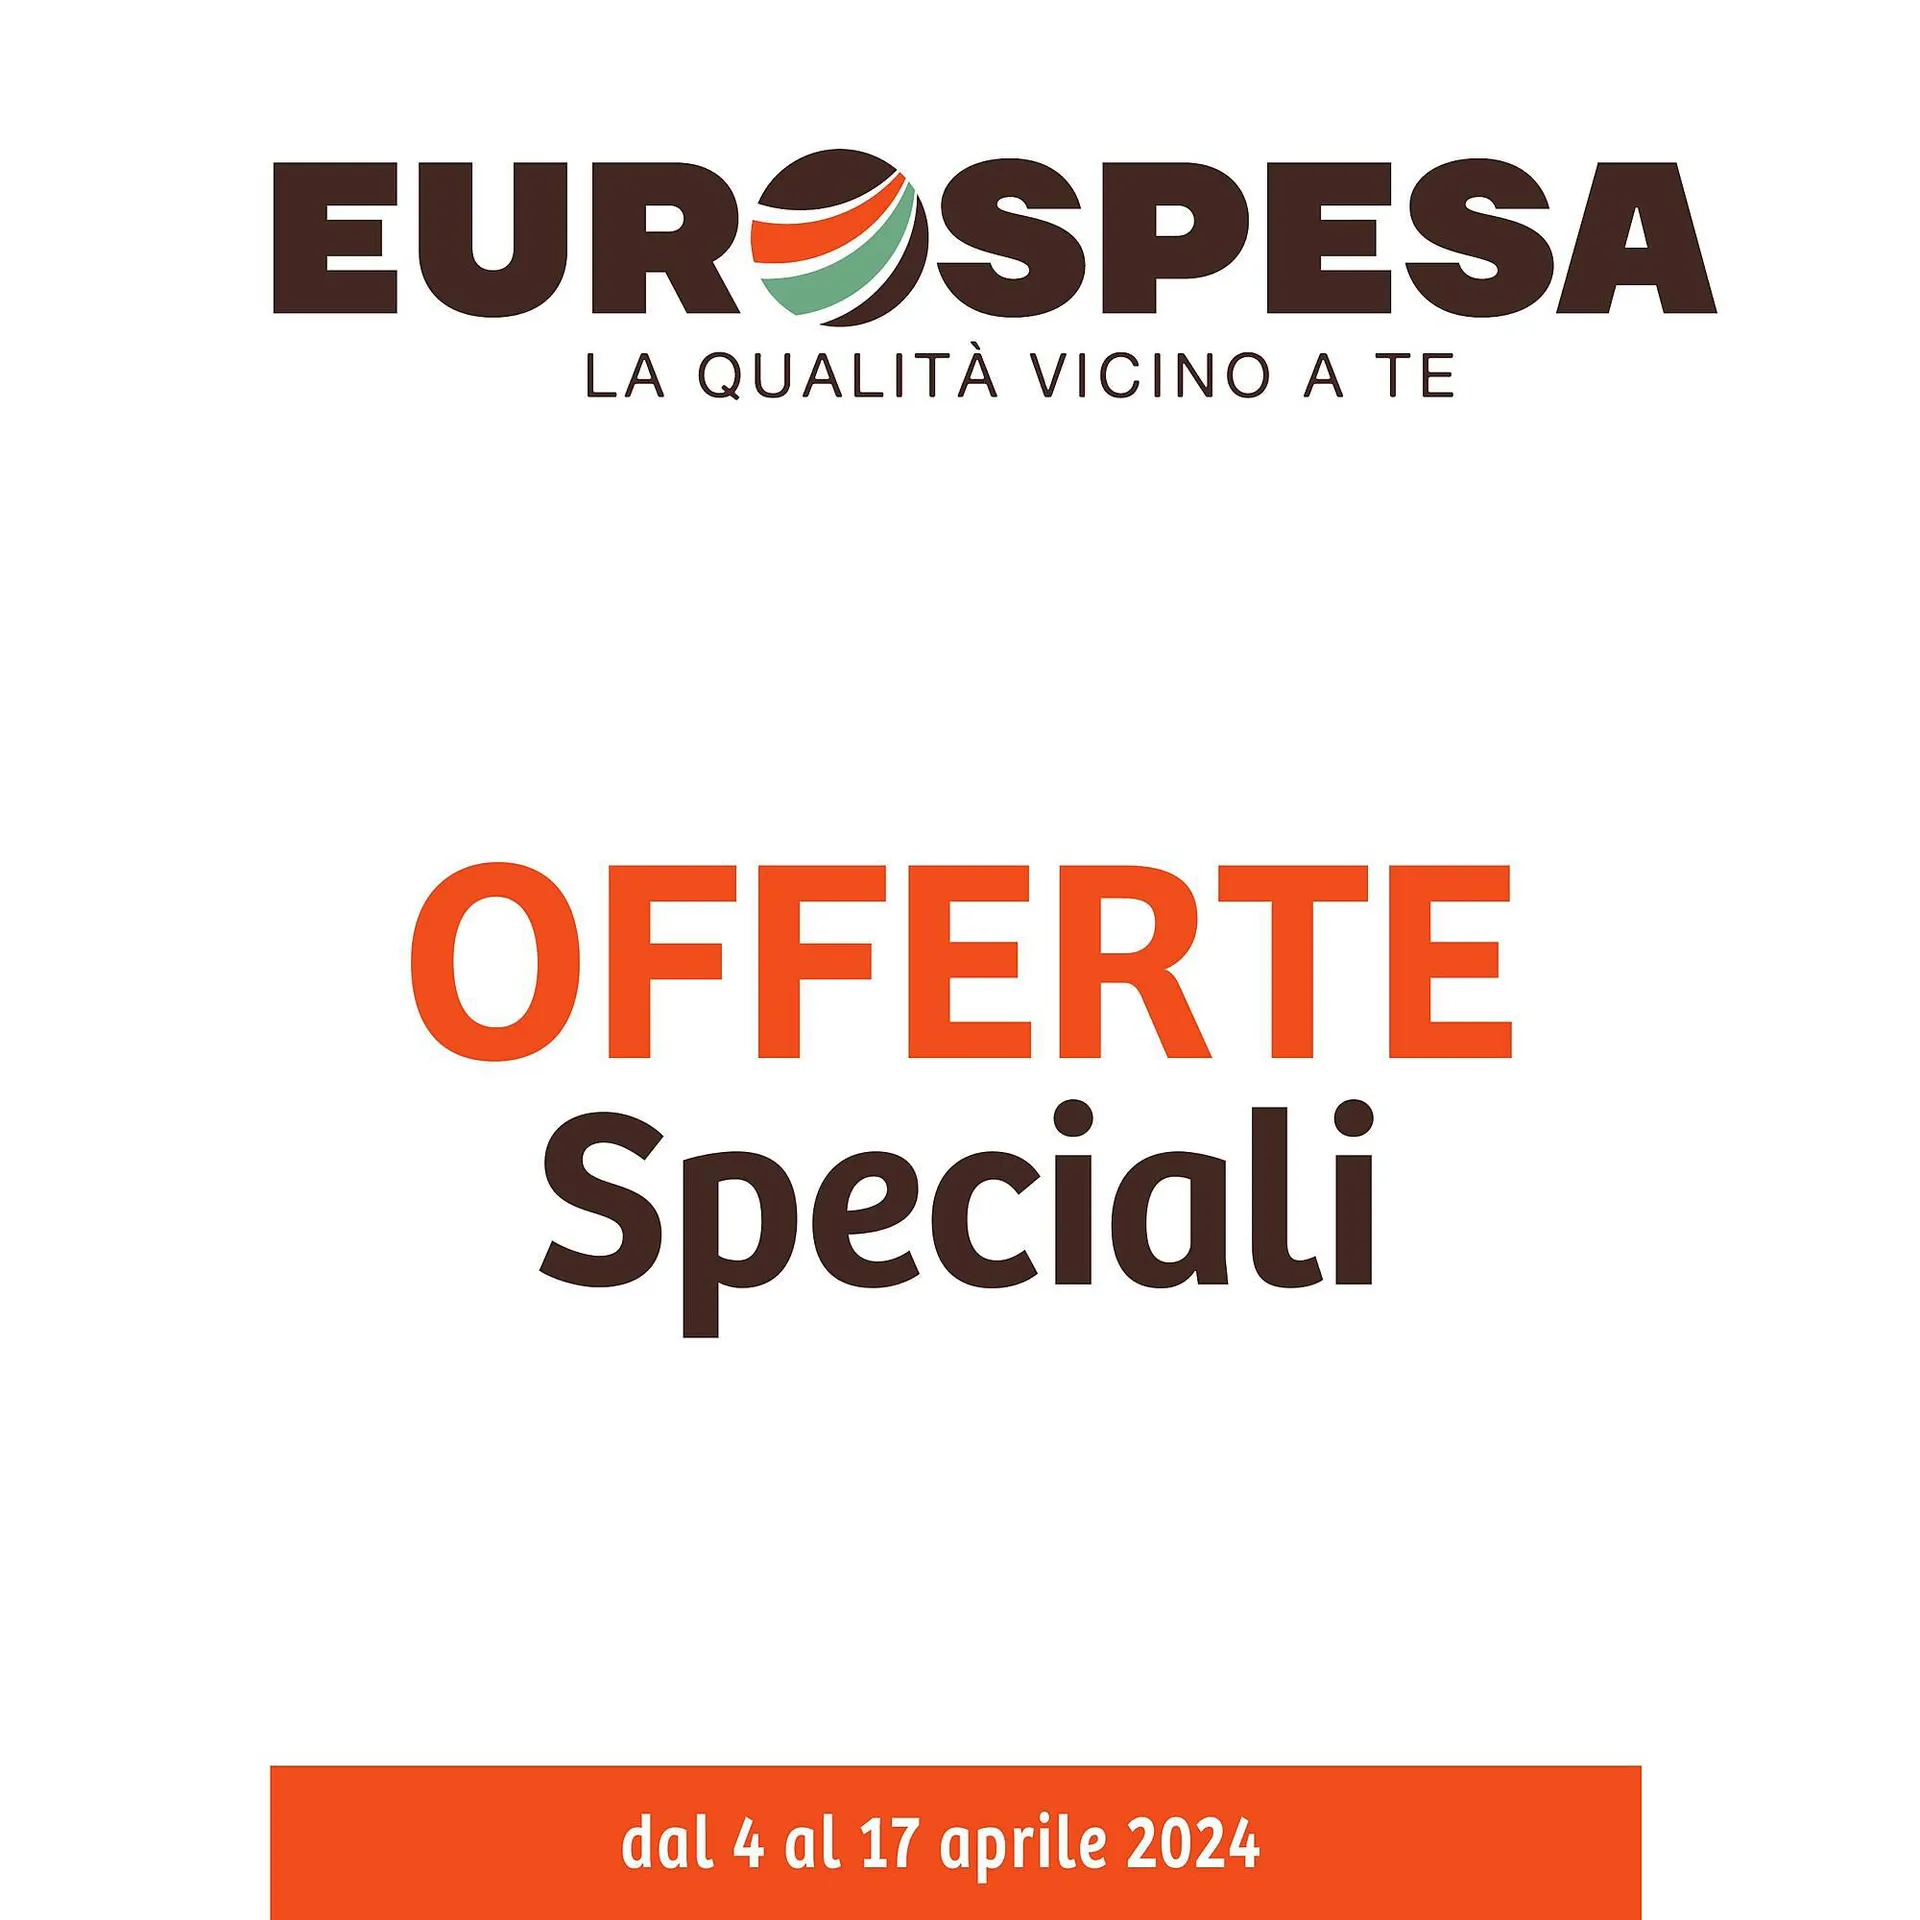 Volantino Eurospesa da 4 aprile a 17 aprile di 2024 - Pagina del volantino 